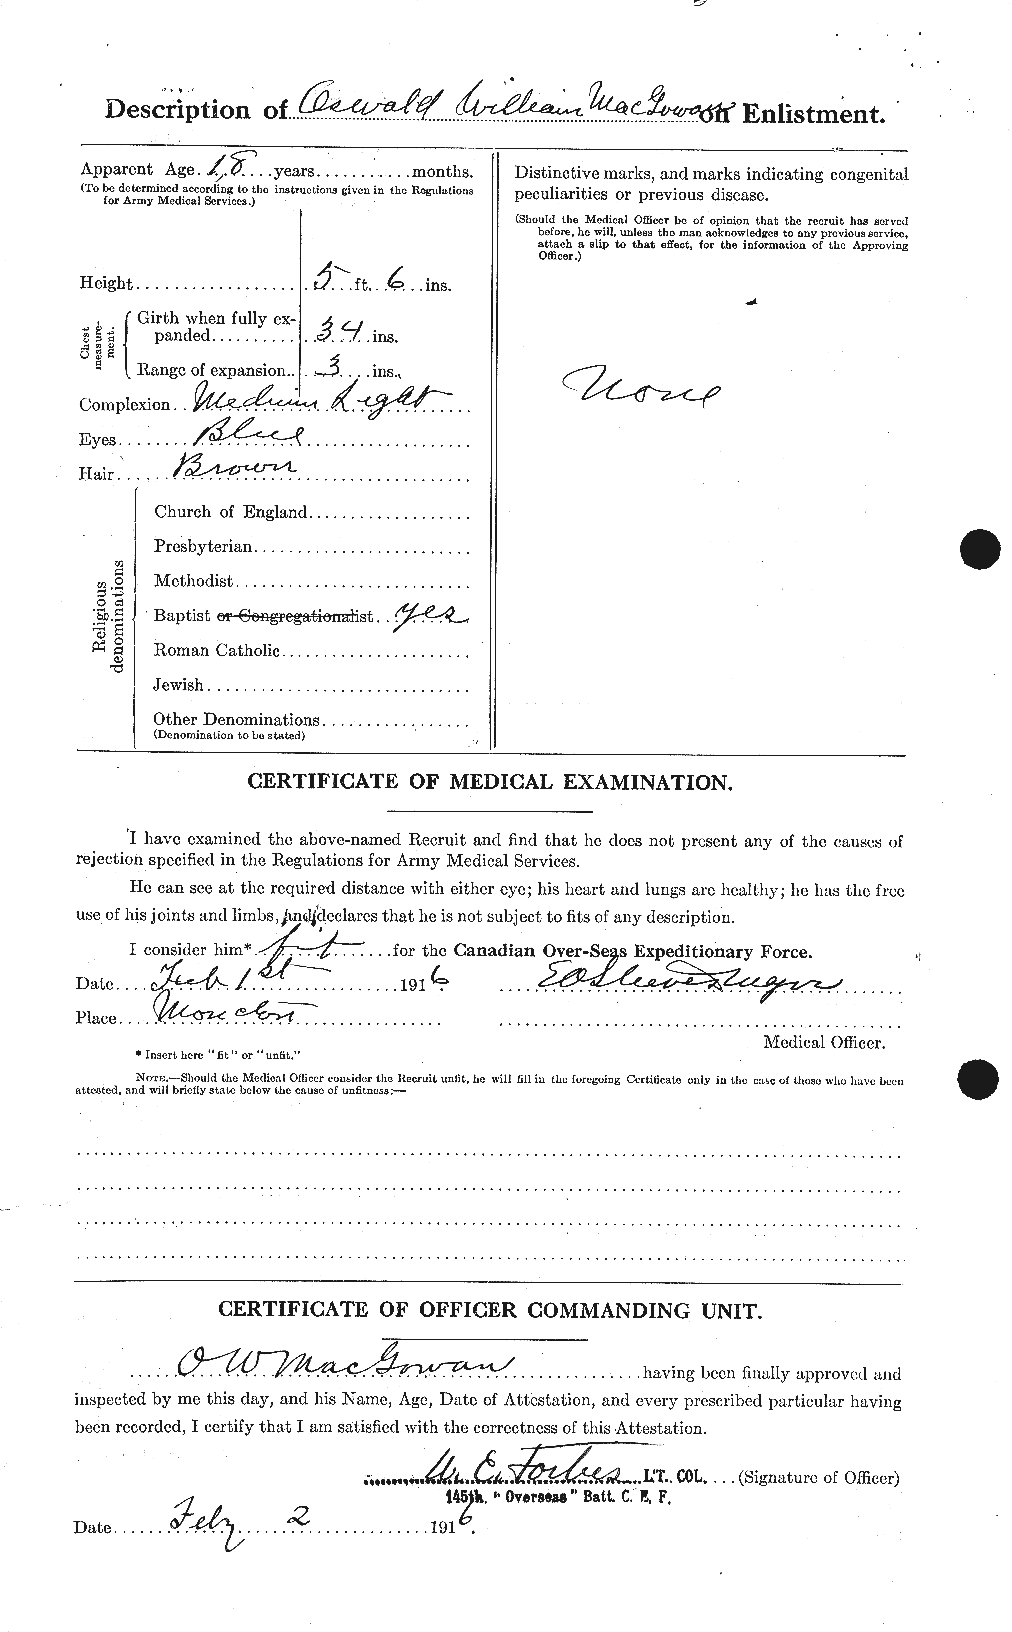 Dossiers du Personnel de la Première Guerre mondiale - CEC 523196b